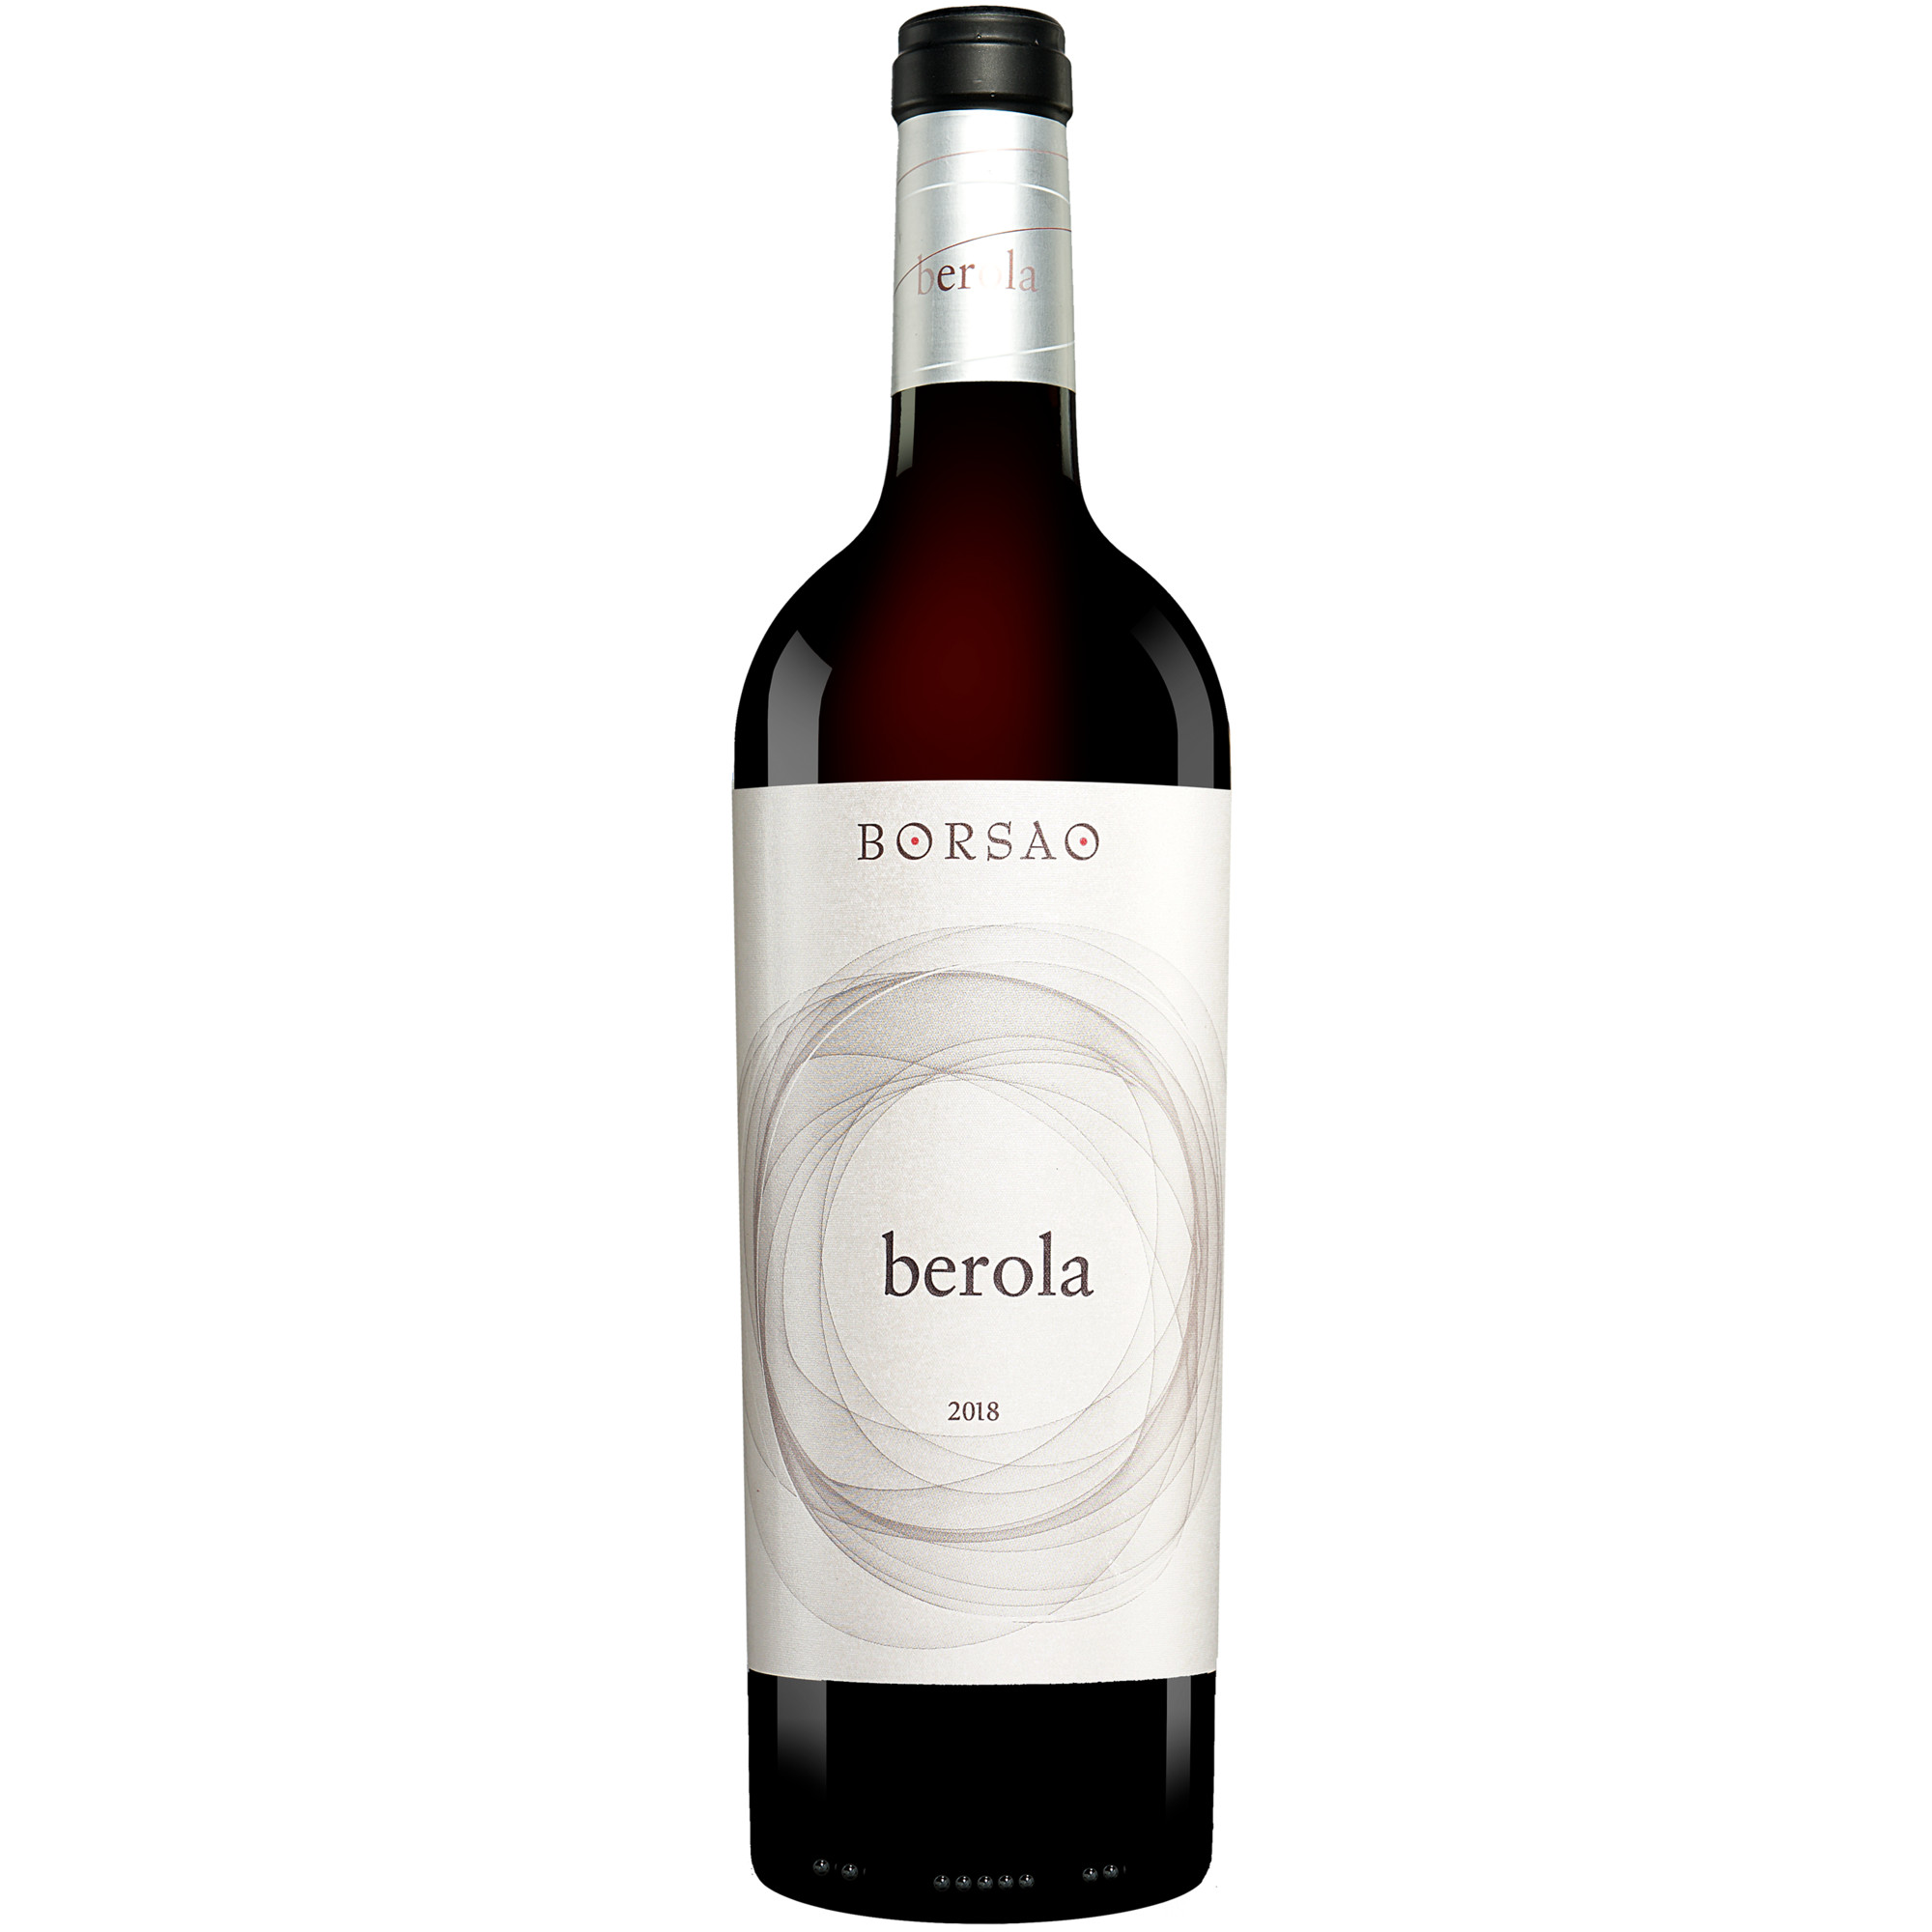 Berola 2018  015% Vol. Rotwein Trocken aus Spanien